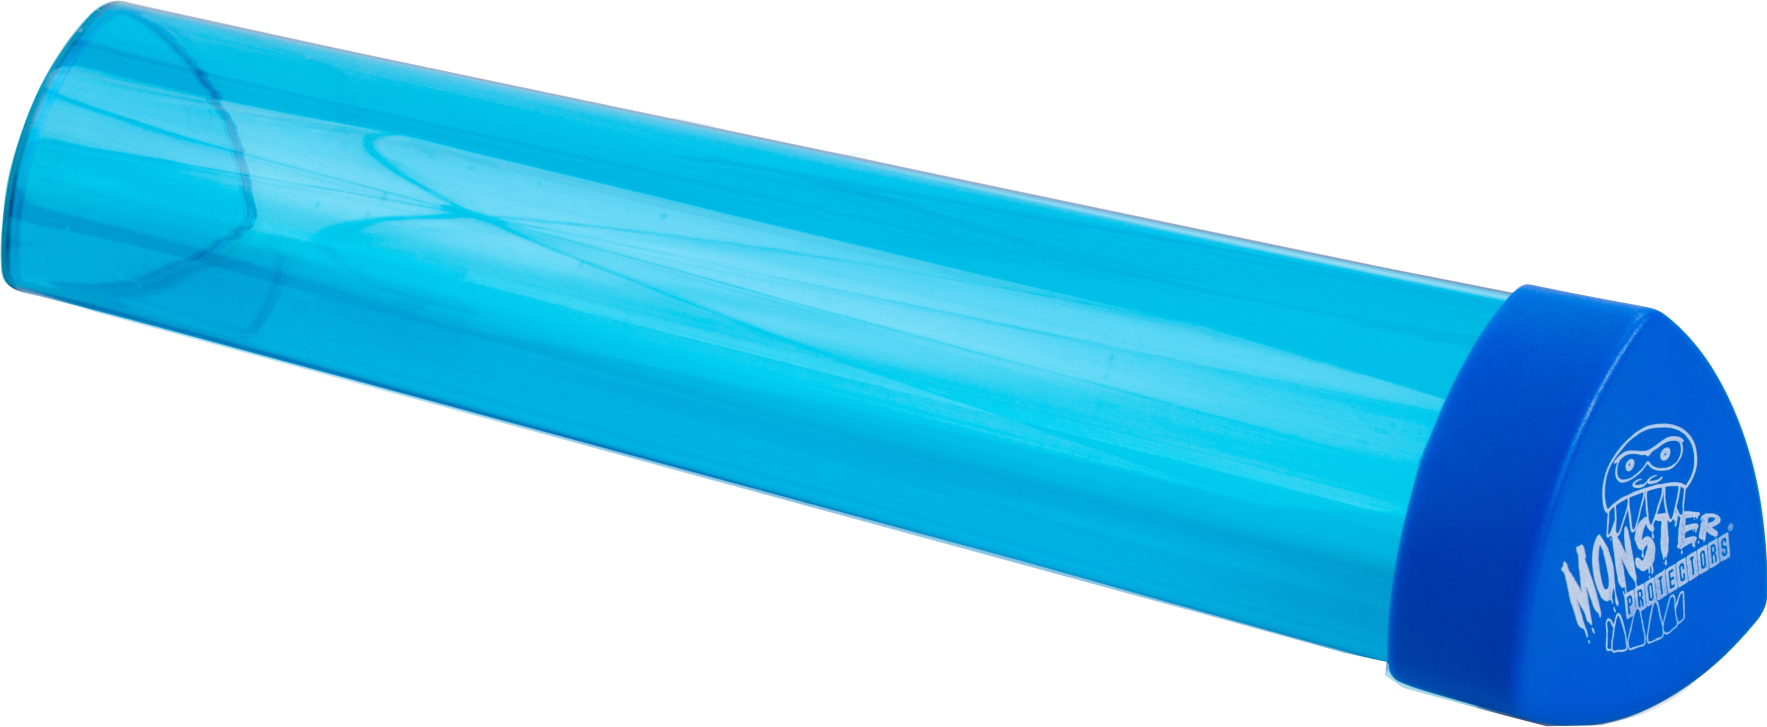 Monster Prism Mat Tube - Translucent Blue | Eastridge Sports Cards & Games